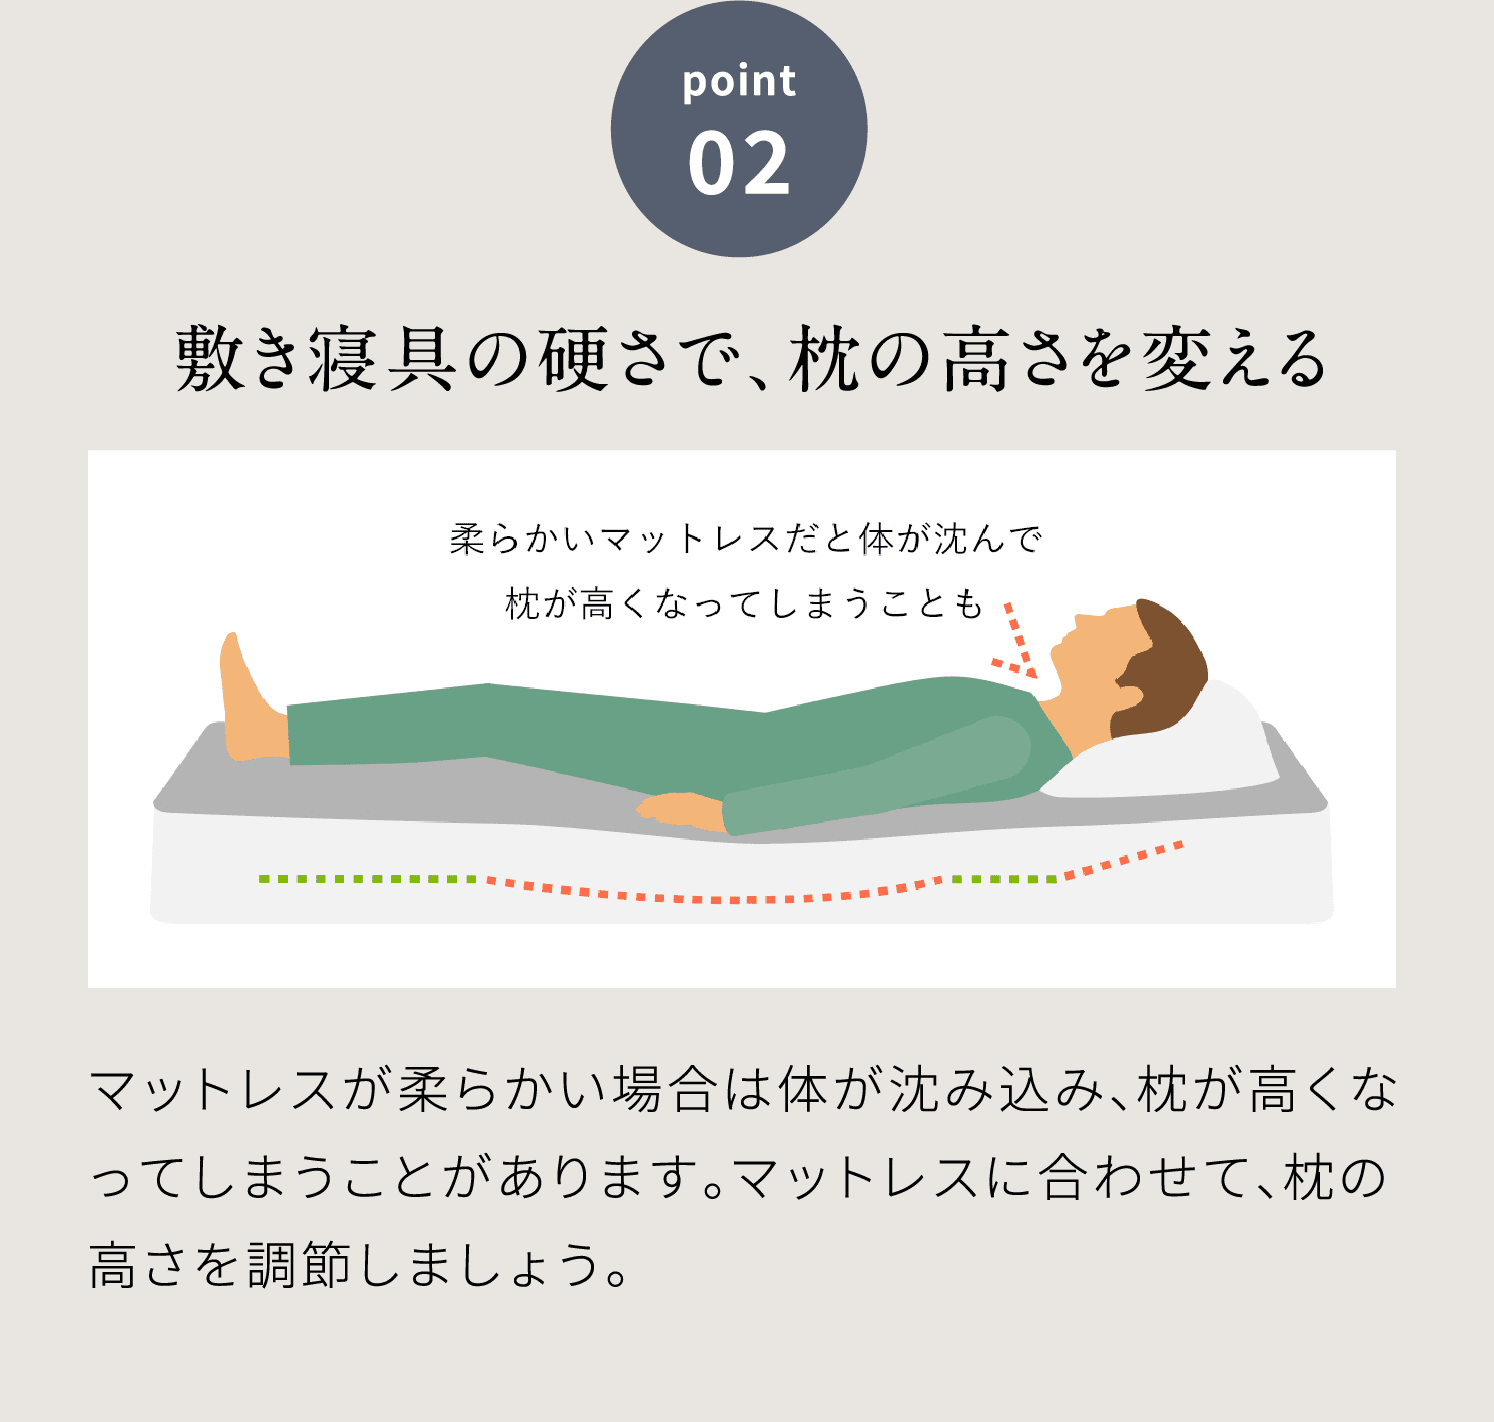 point02 敷き寝具の硬さで、枕の高さを変える
            マットレスが柔らかい場合は体が沈み込み、枕が高くなってしまうことがあります。マットレスに合わせて、枕の高さを調節しましょう。
            気持ちよく支えてくれる、絶妙なフィット感